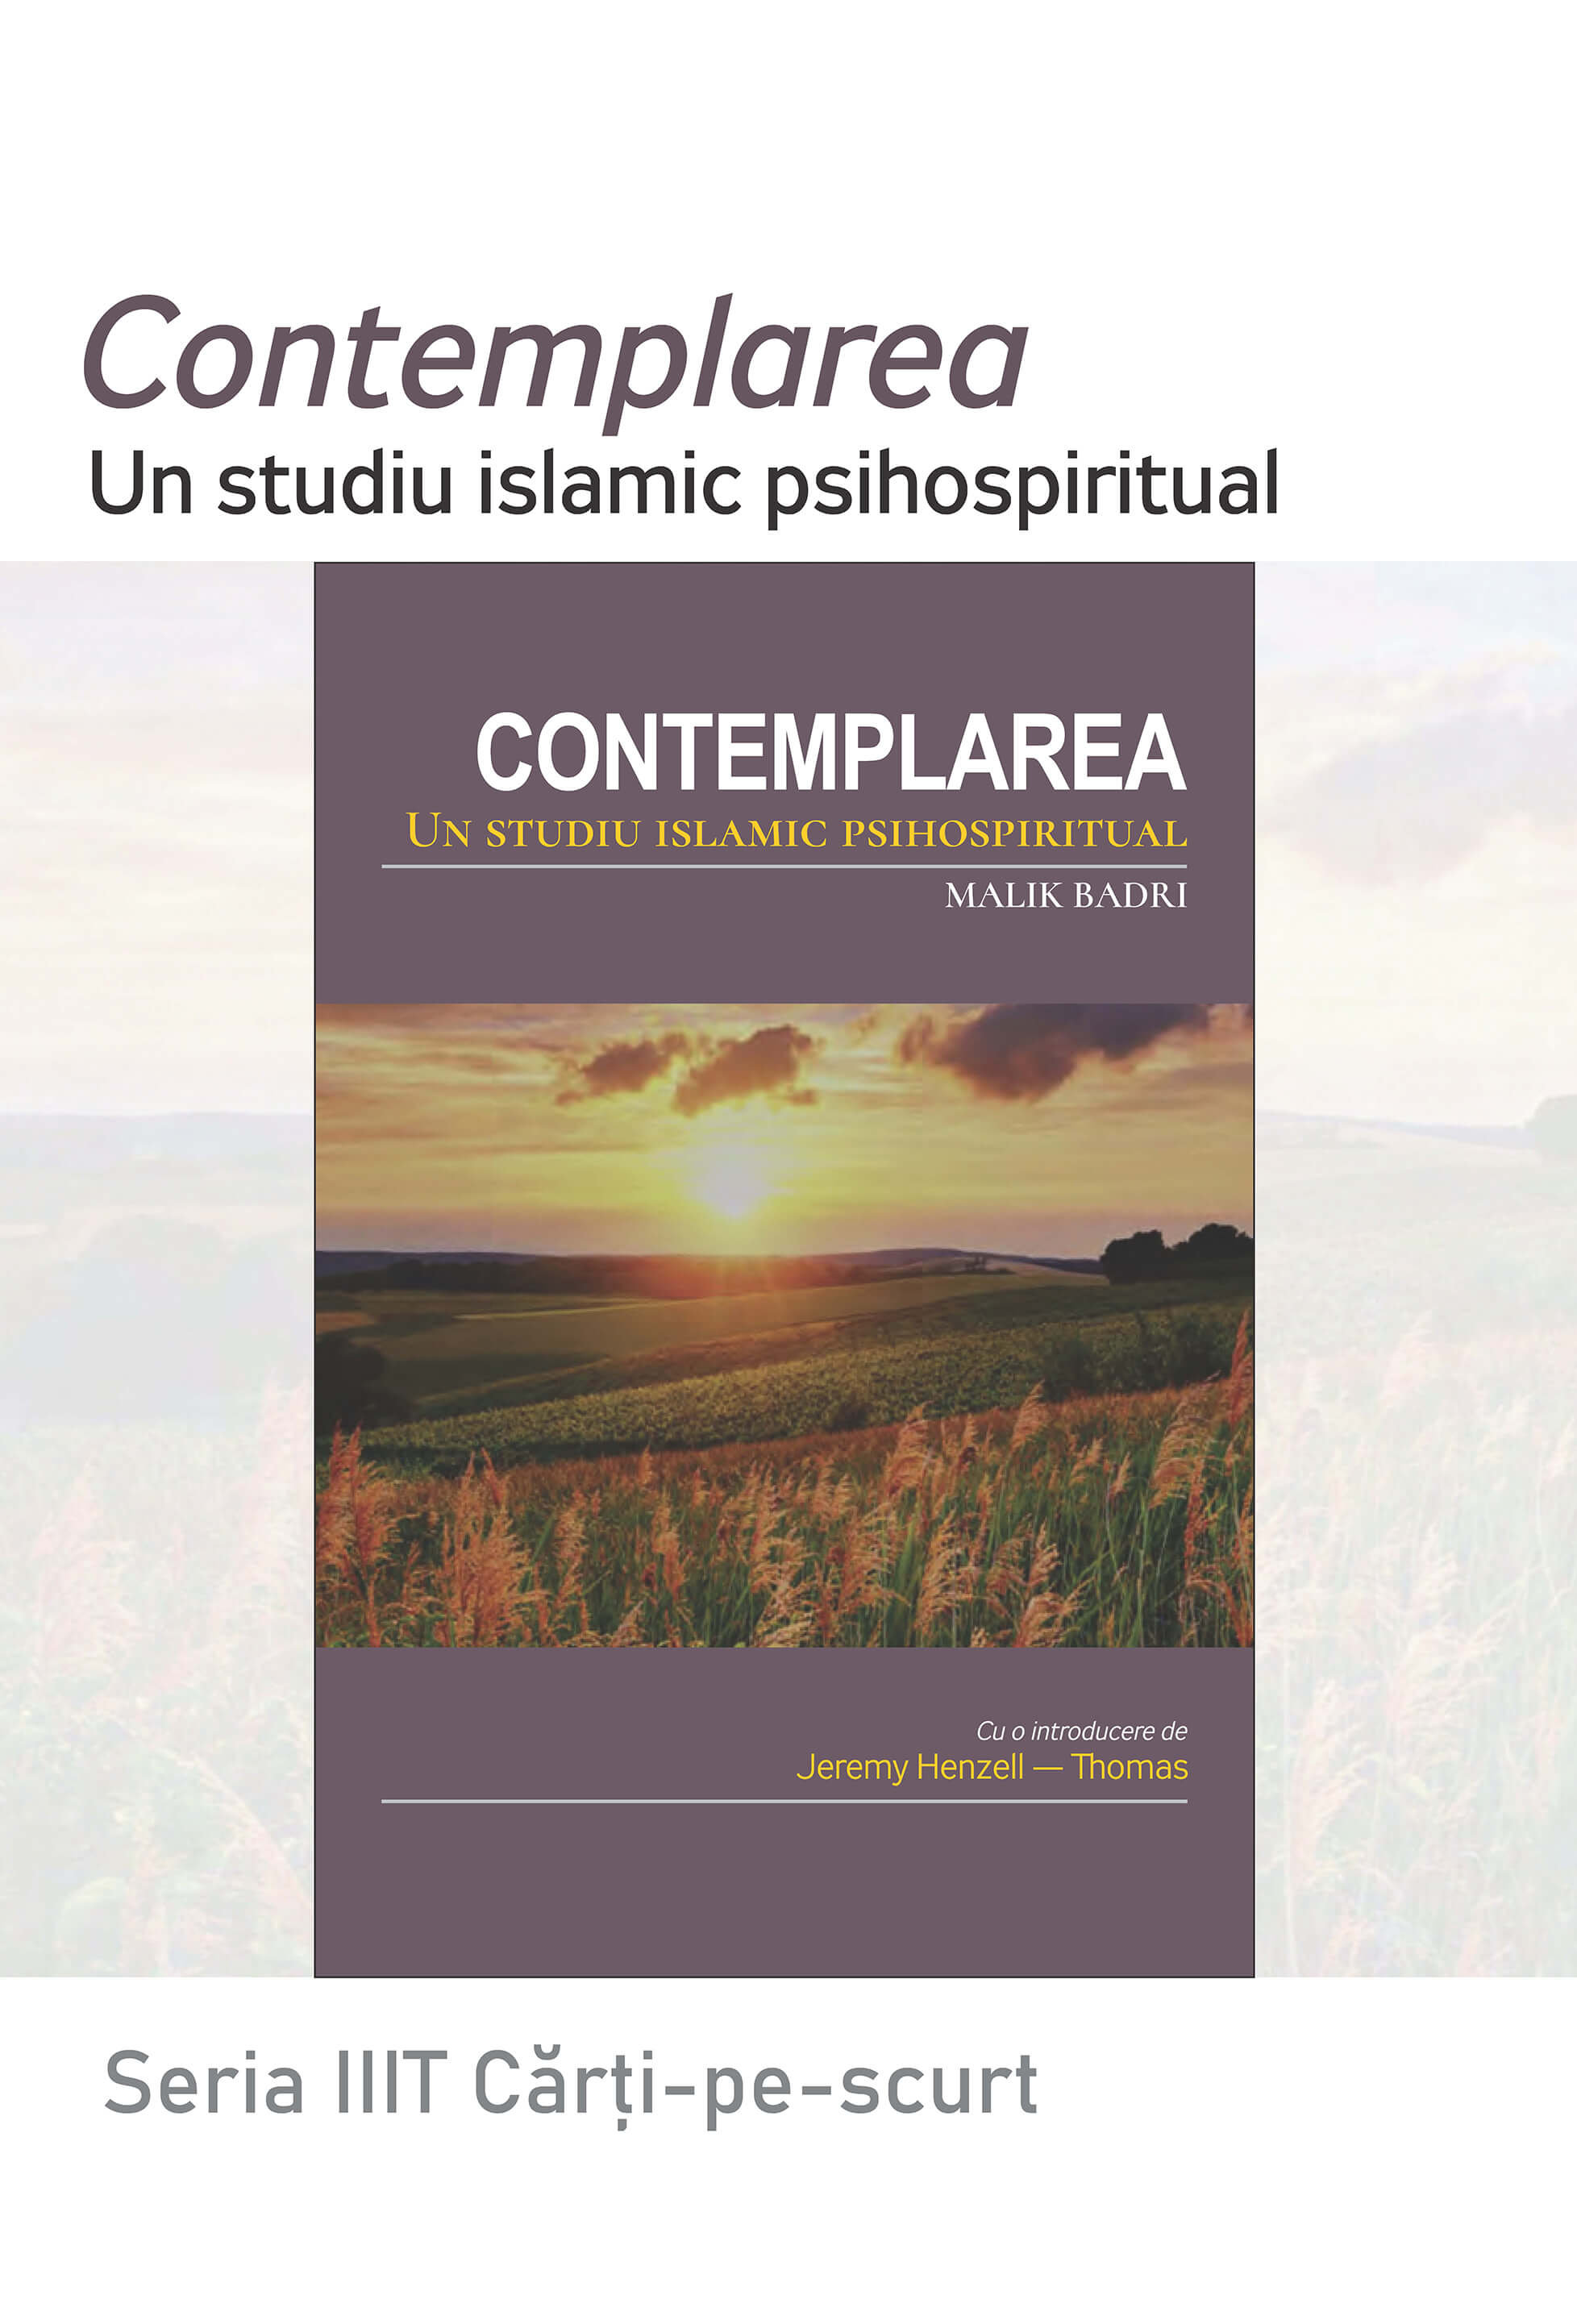 Romanian: Seria Cărți-pe-scurt: Contemplarea: Un studiu islamic psihospiritual (Book In Brief: Contemplation: An Islamic Psychospiritual Study)